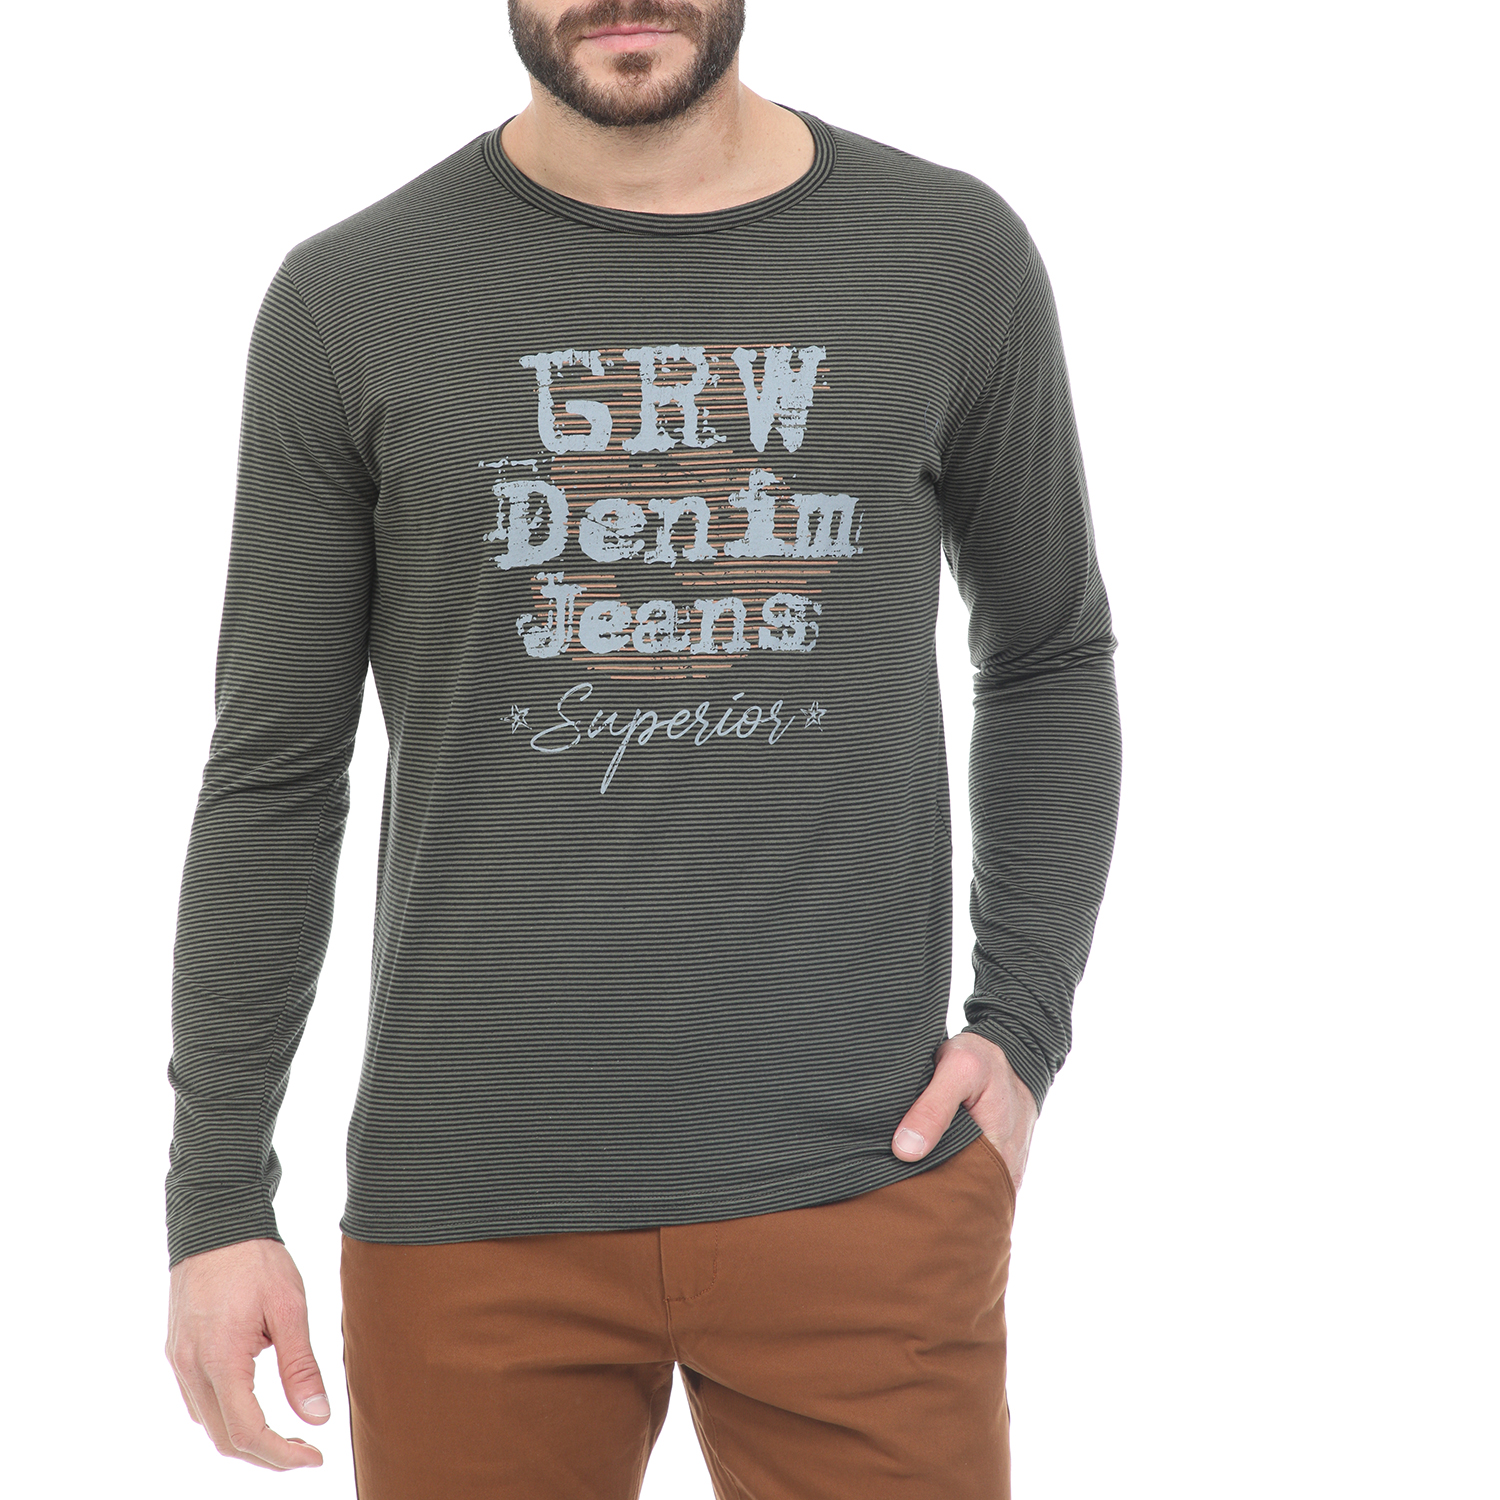 Ανδρικά/Ρούχα/Μπλούζες/Μακρυμάνικες GREENWOOD - Ανδρική μπλούζα GREENWOOD χακί